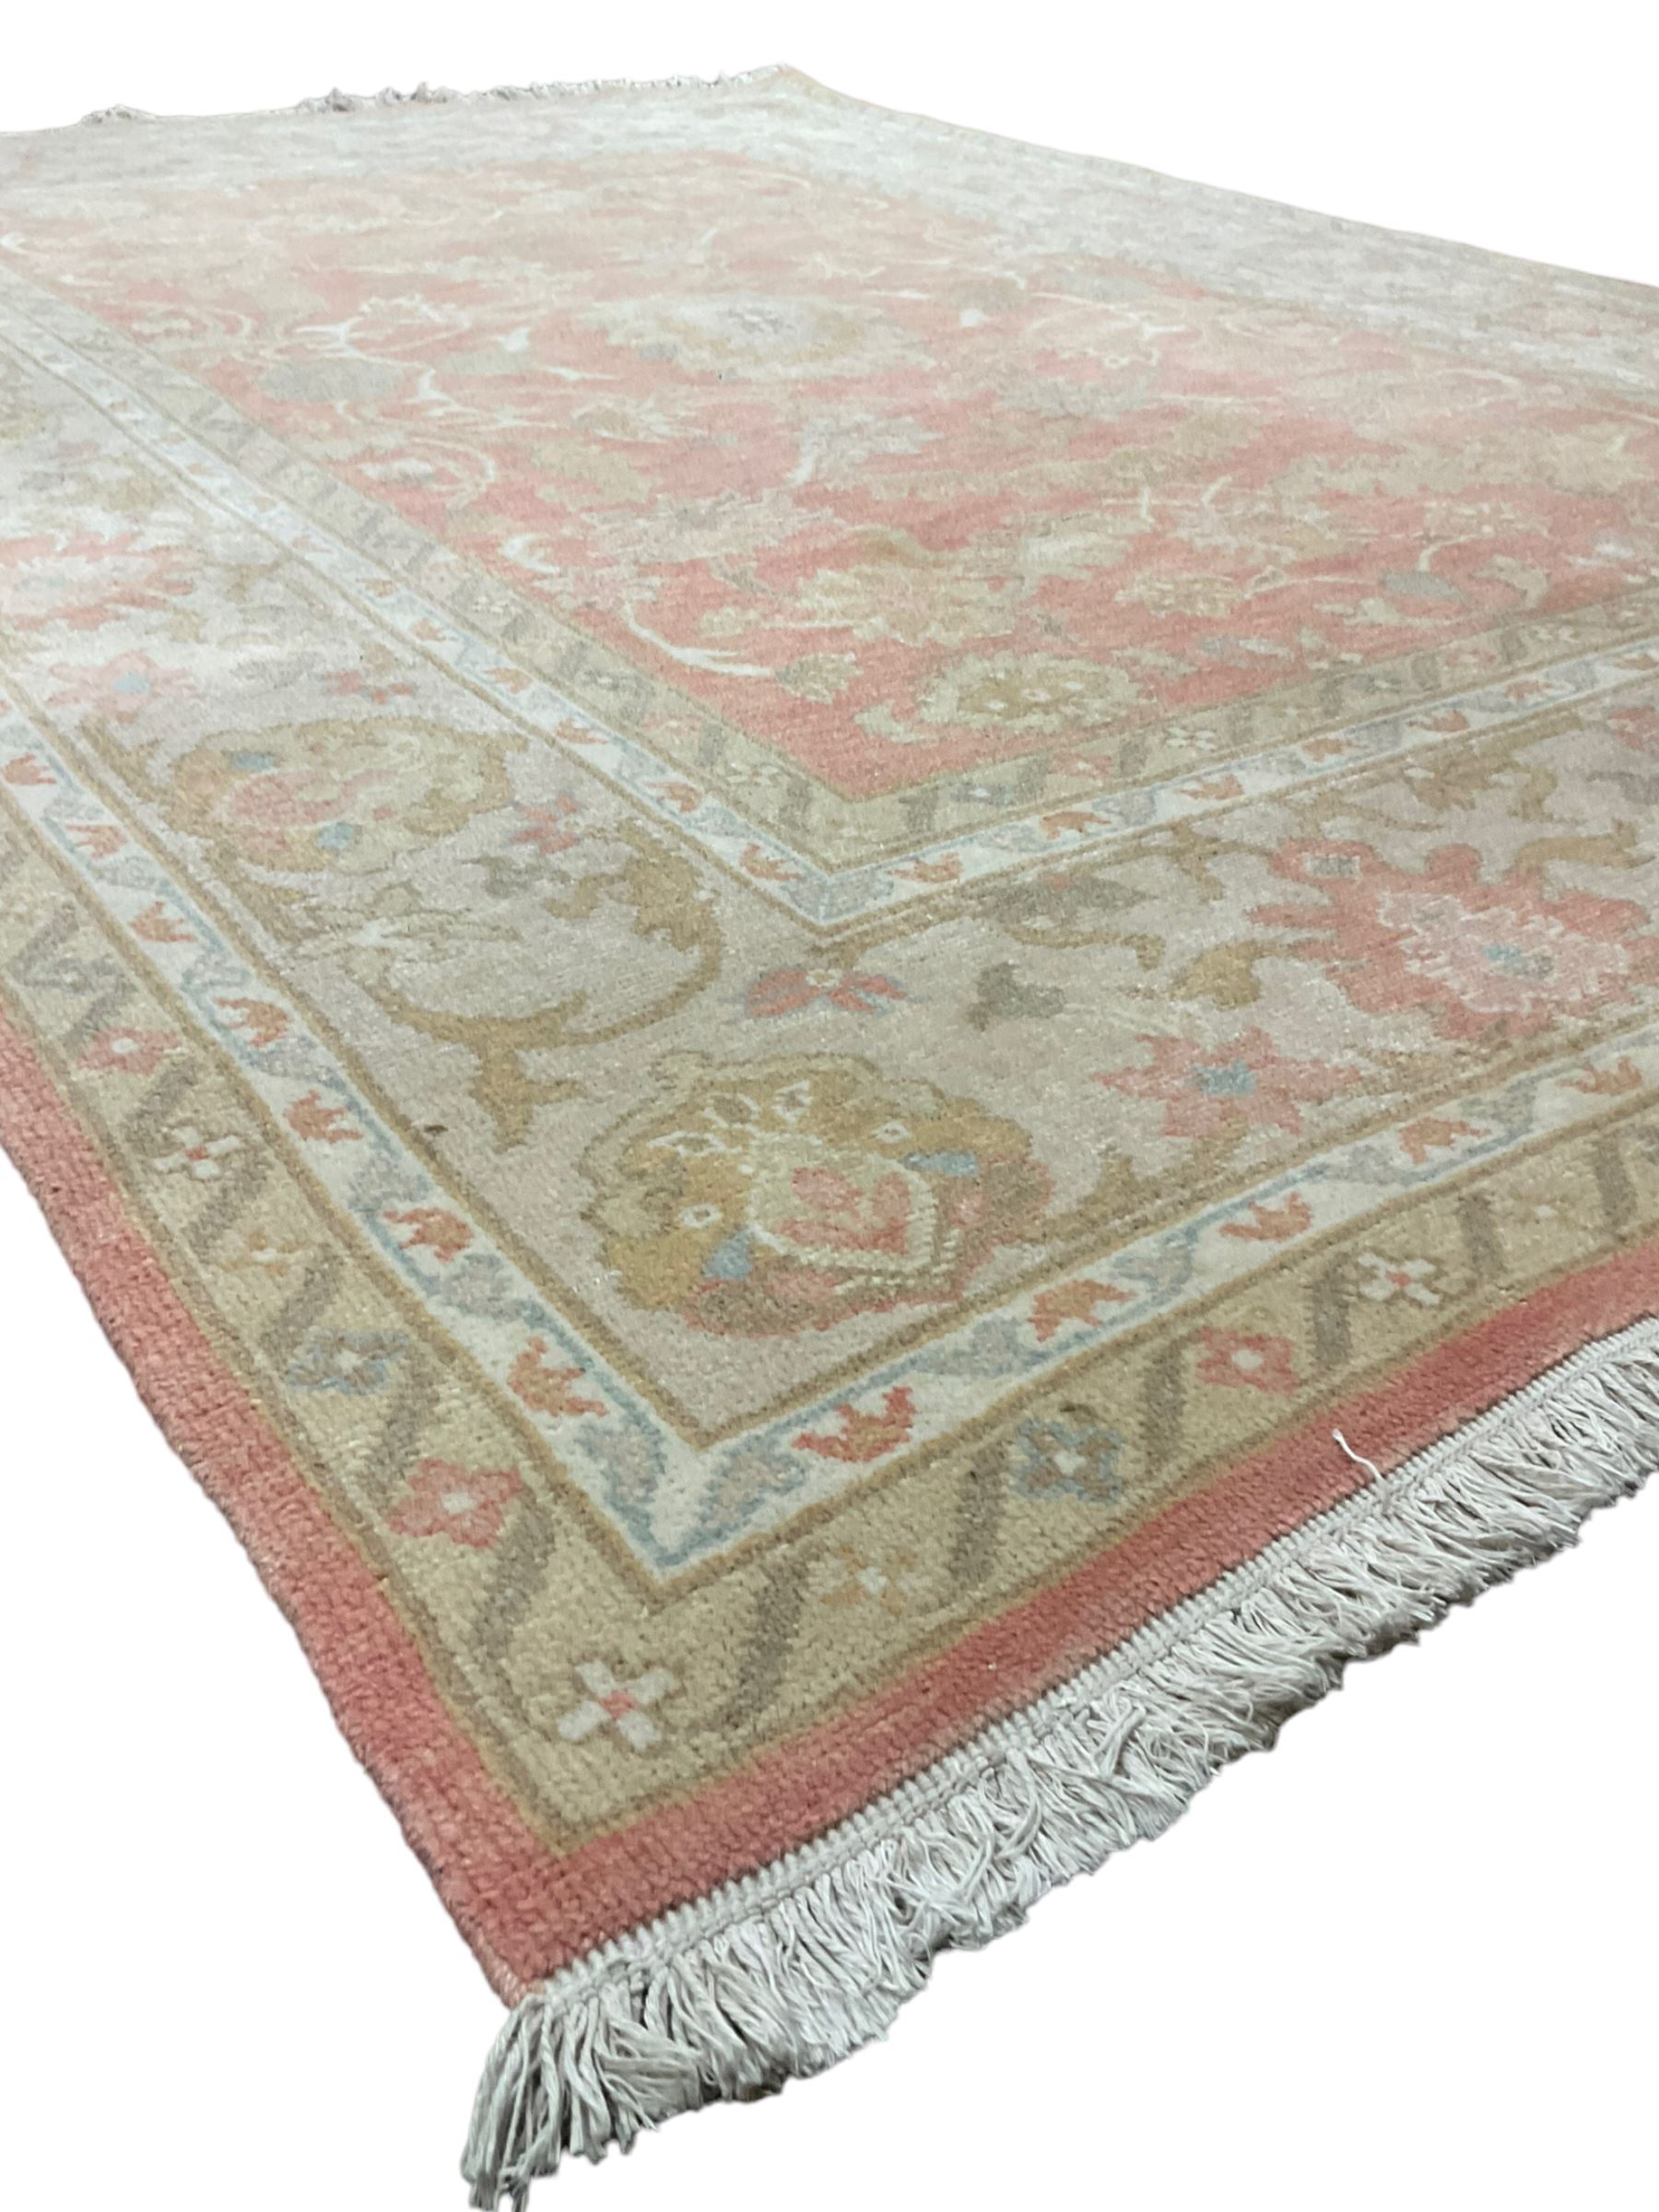 Persian Zeigler design rug - Image 3 of 5